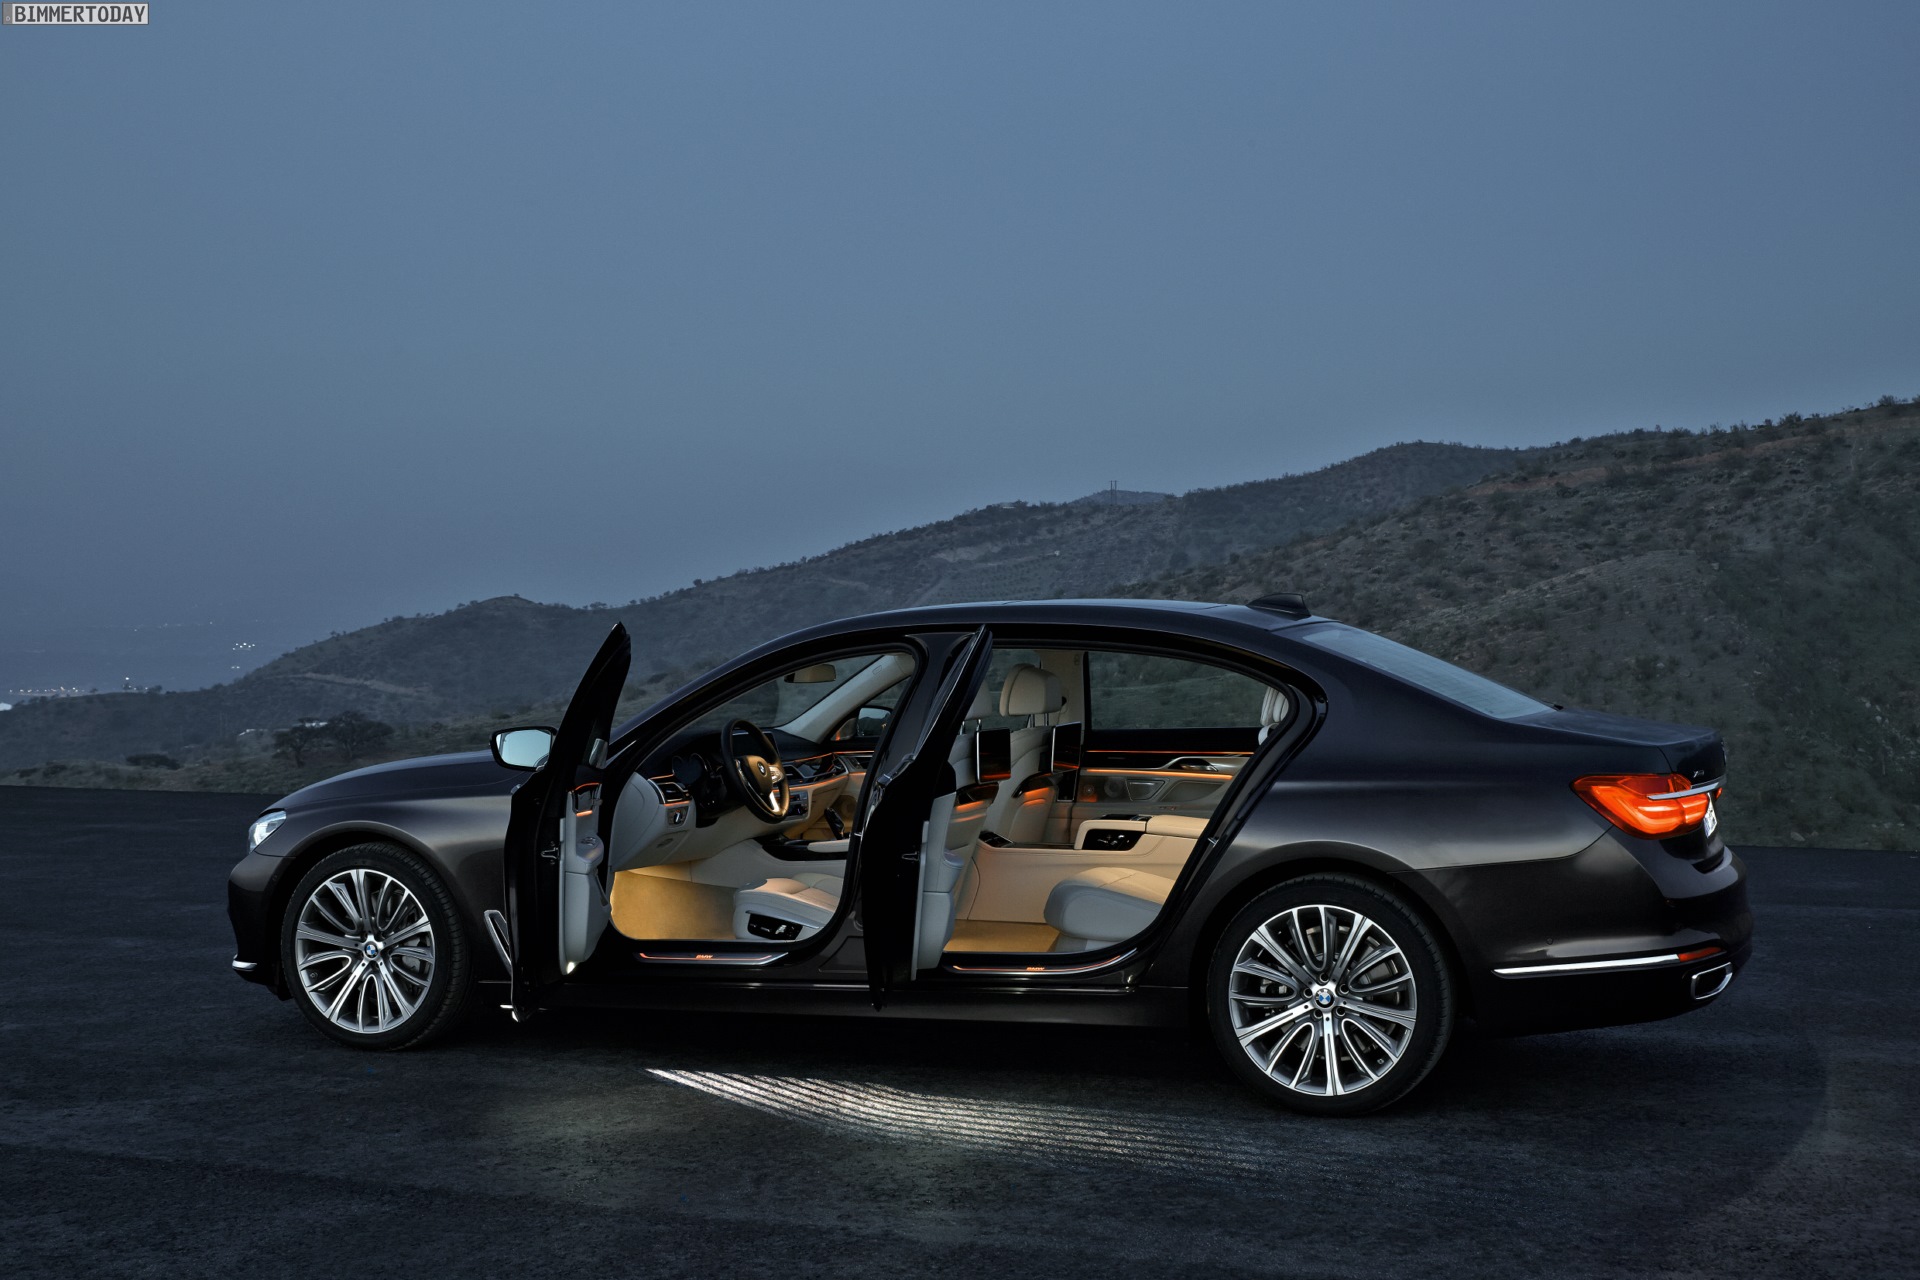 https://cdn.bimmertoday.de/wp-content/uploads/2015/06/BMW-7er-2015-Ambiente-Licht-Innenraum-G11-G12-01.jpg